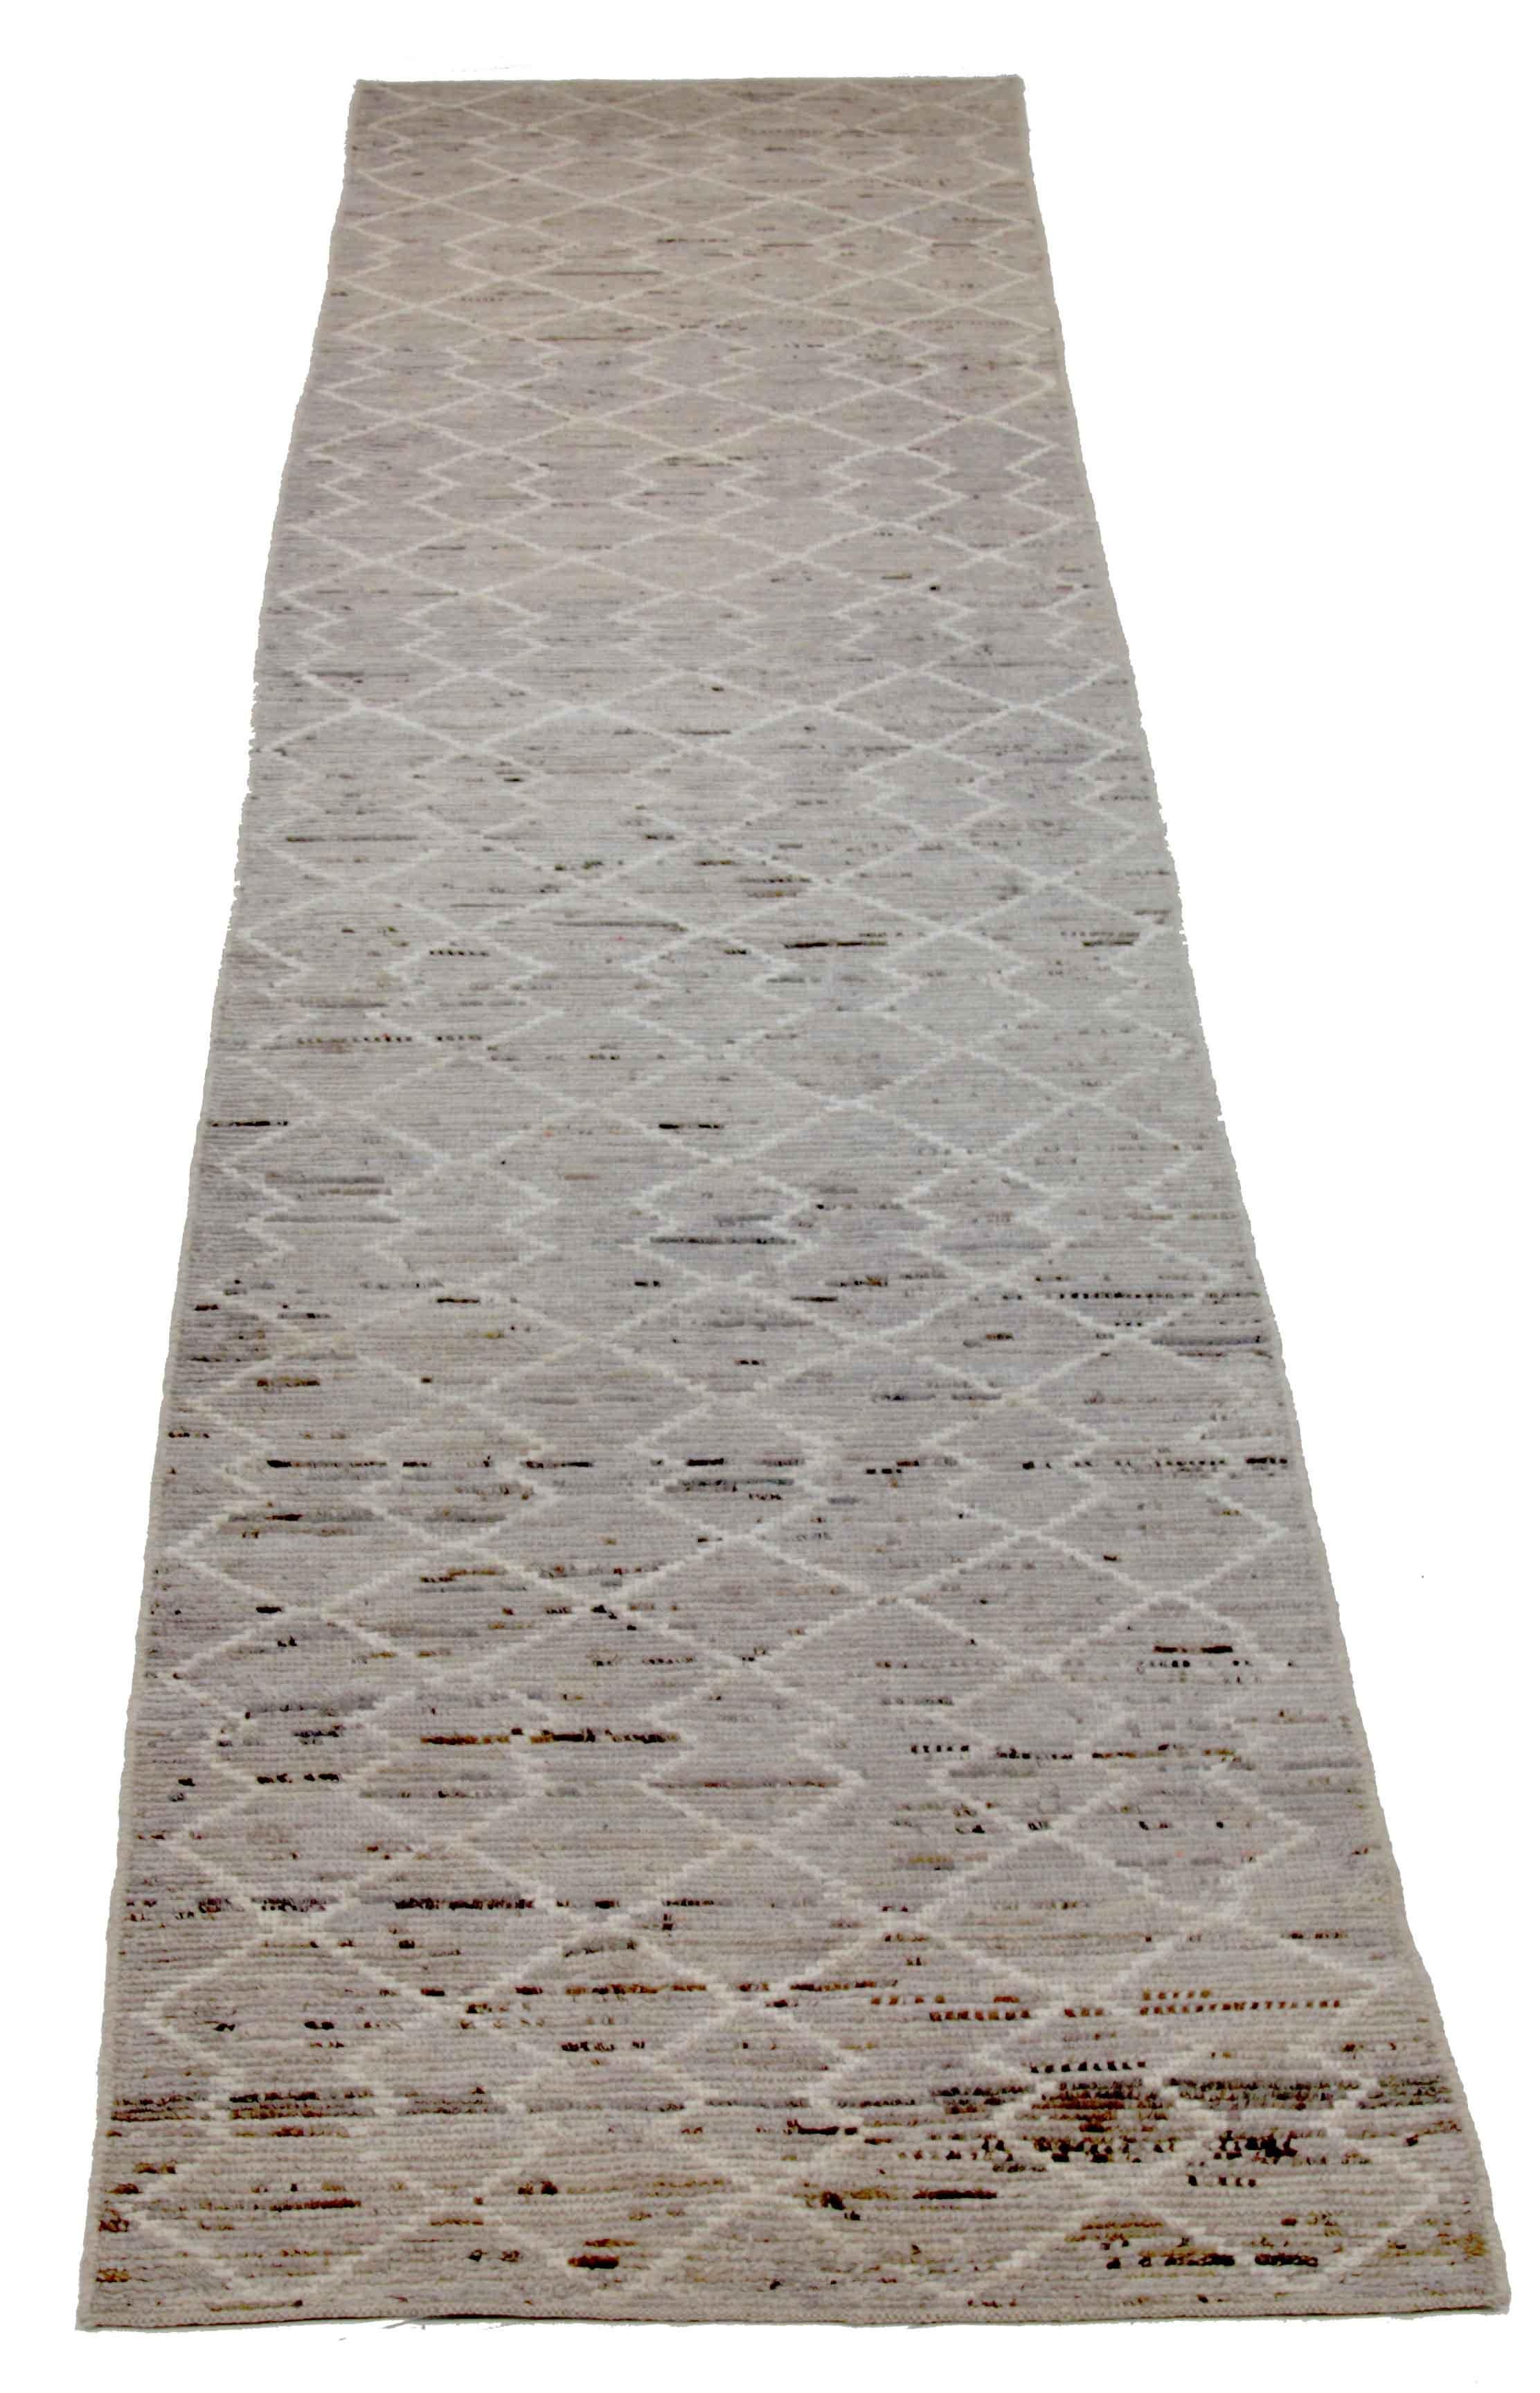 Moderner afghanischer Teppich, handgewebt aus feinster Schafswolle. Es ist mit natürlichen pflanzlichen Farbstoffen gefärbt, die für Menschen und Haustiere sicher sind. Dieses Stück ist eine traditionelle afghanische Weberei mit einem marokkanisch